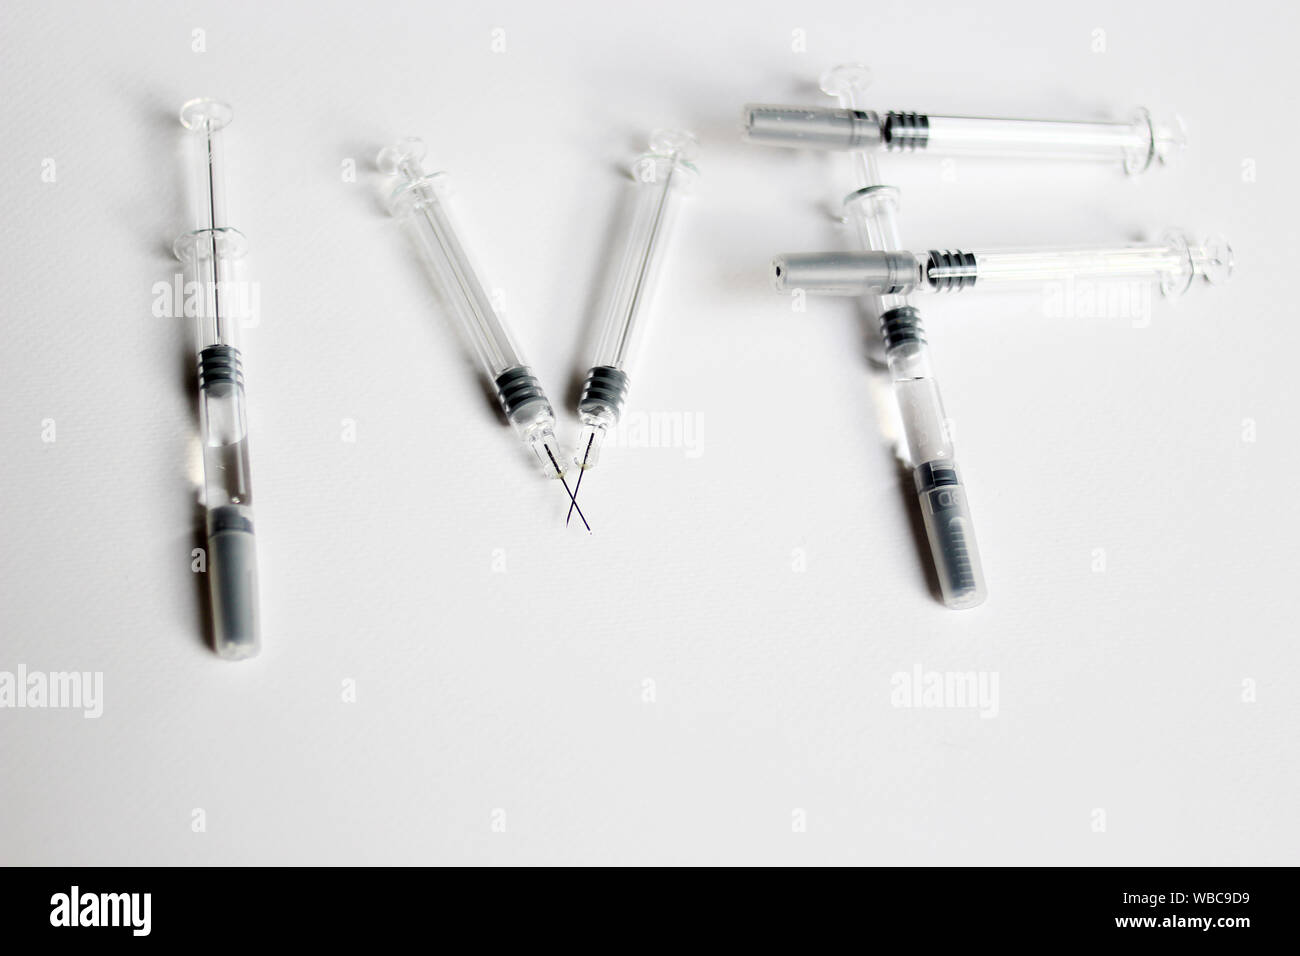 Penna per iniezione per fertilizzazione in vitro. Farmaci per il trattamento dell'IVF, siringhe, aghi e pillole. IVF ortografato con siringhe Foto Stock